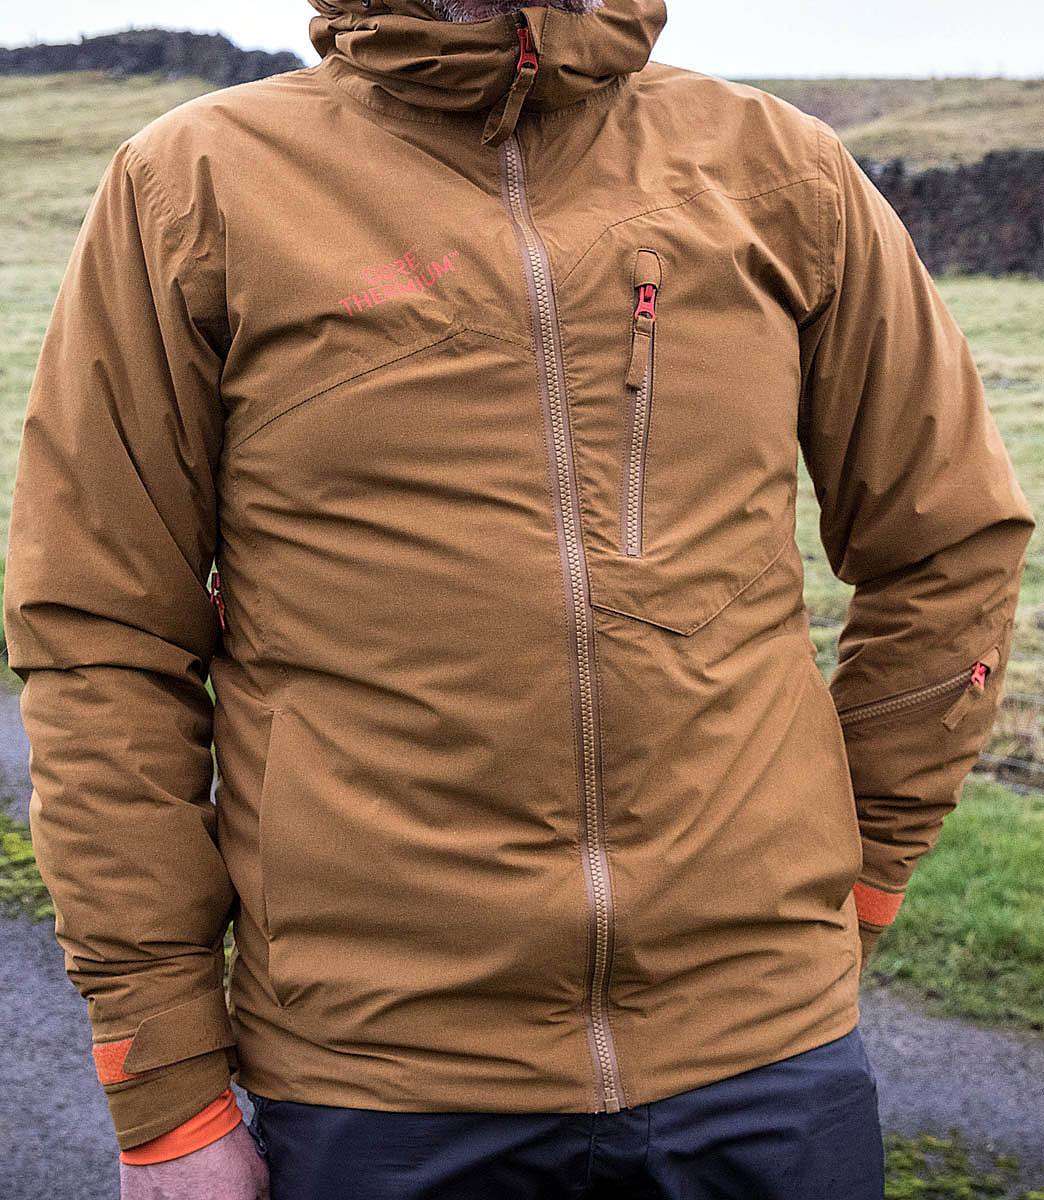 vækst faldskærm fortjener grough — On test: insulated jackets reviewed